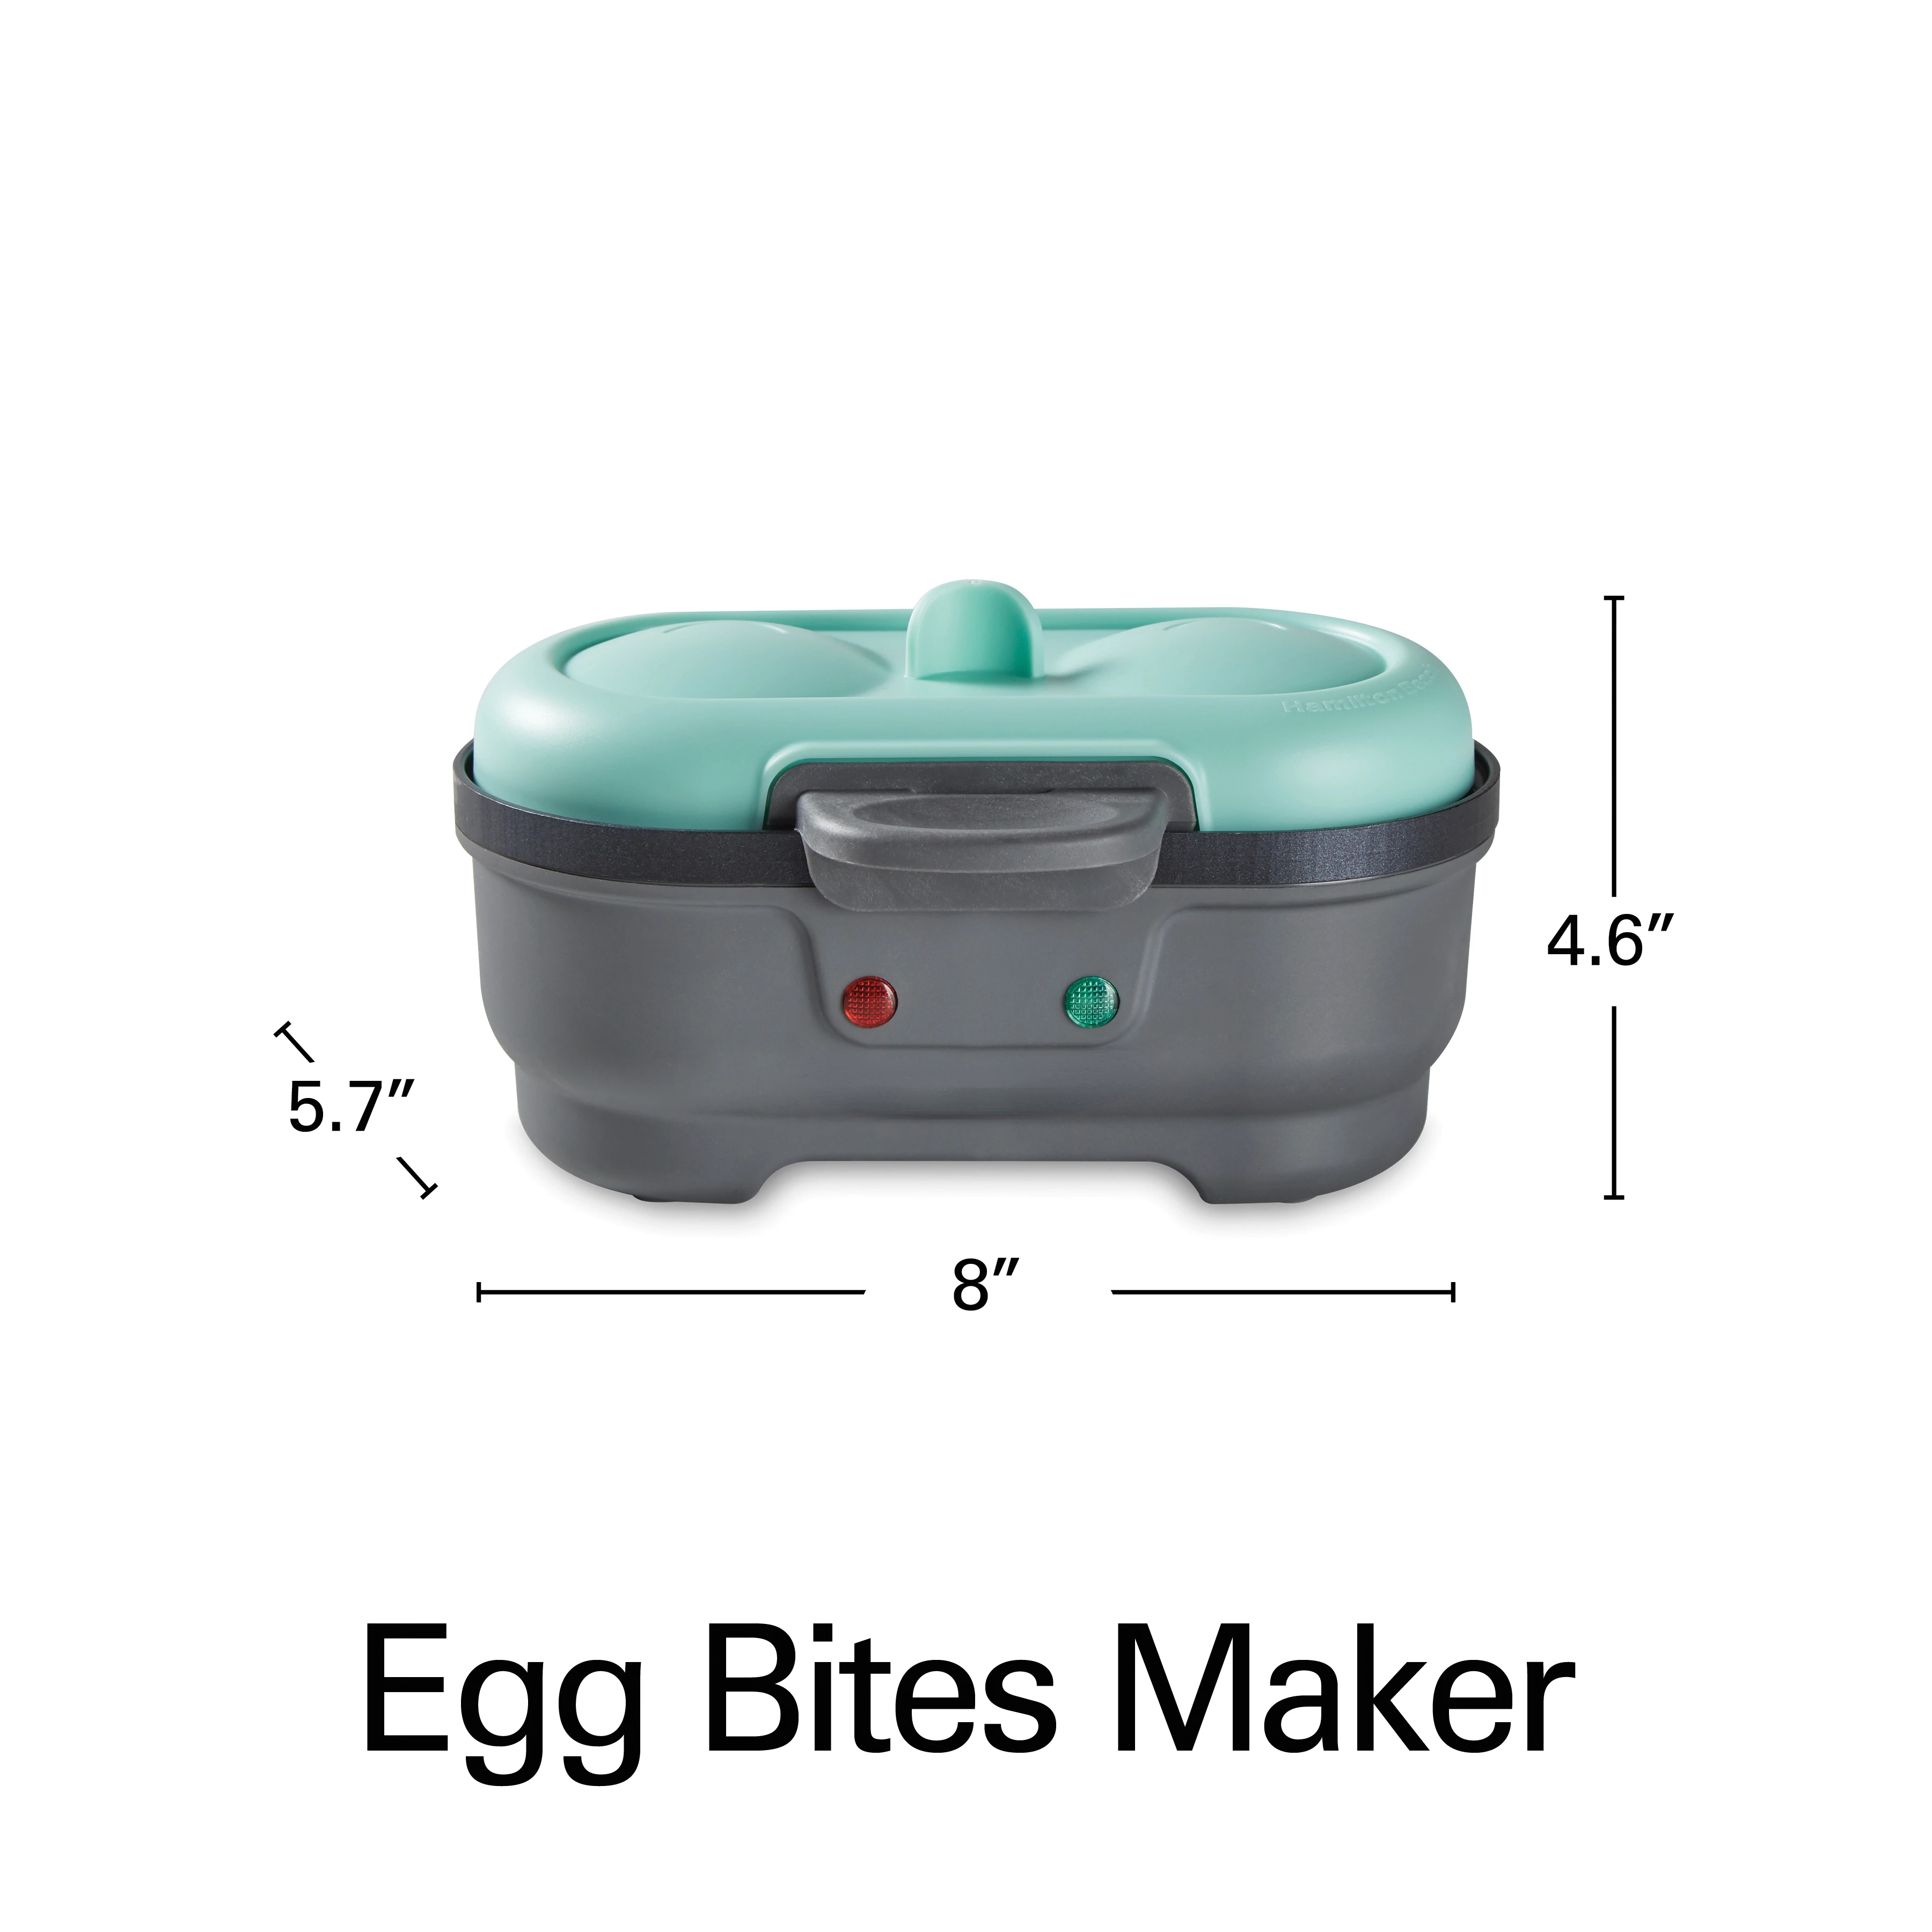 https://ae01.alicdn.com/kf/Sd1359279bccc465ab8deae043737e89cc/Bites-Maker-Egg-Cooker-2-Egg-Capacity-Mint-25506-Blender-Mini-portable-blender-Blender-portable-smoothie.jpeg